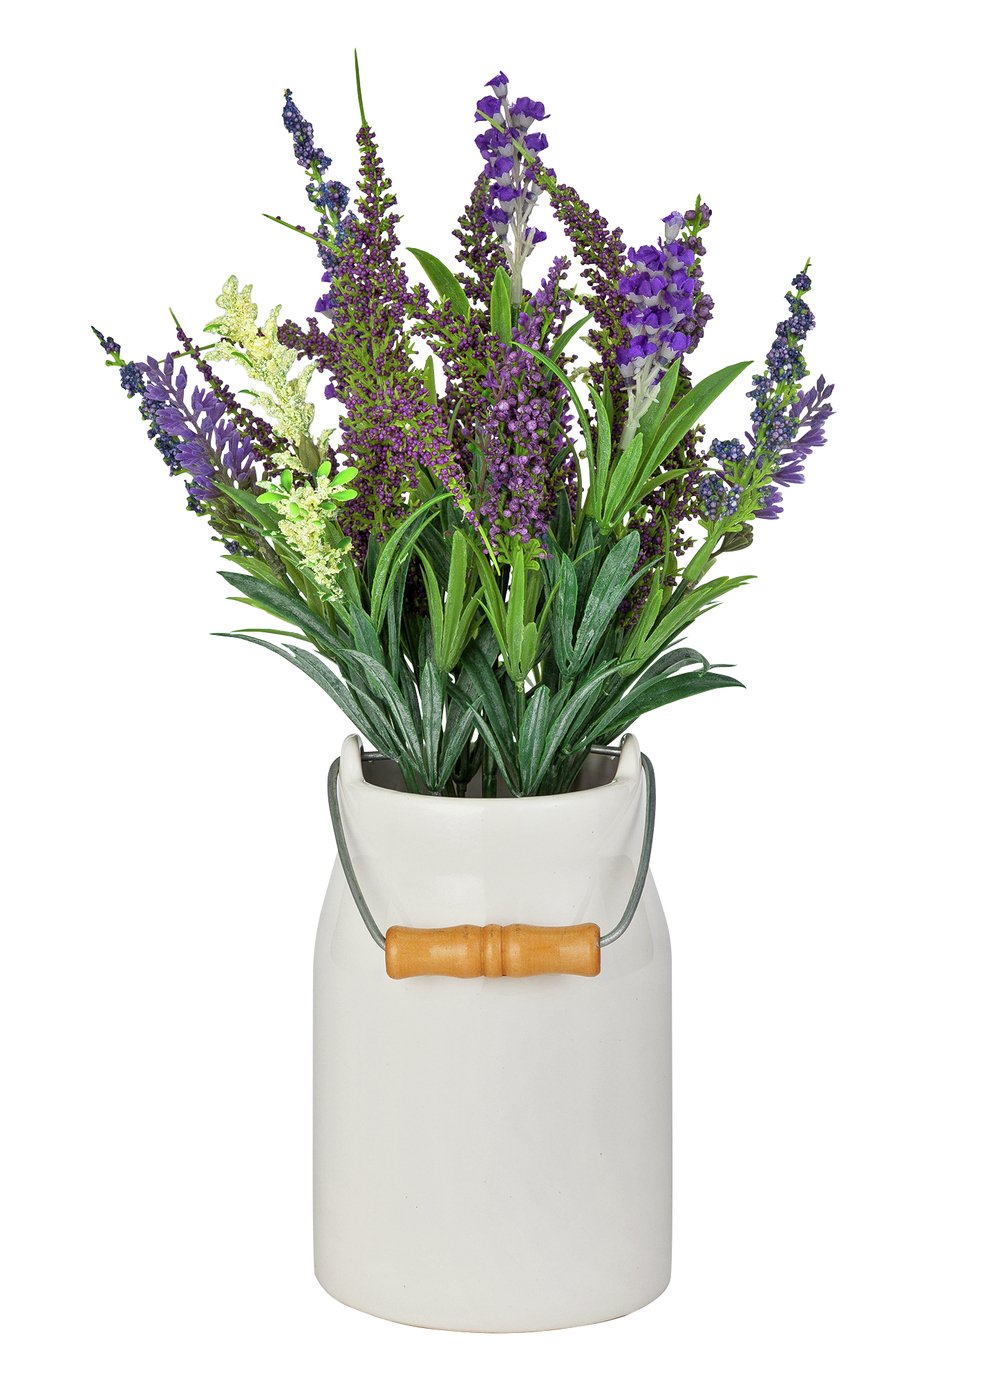 Habitat Lavender Artificial Arrangement in Ceramic Jug 